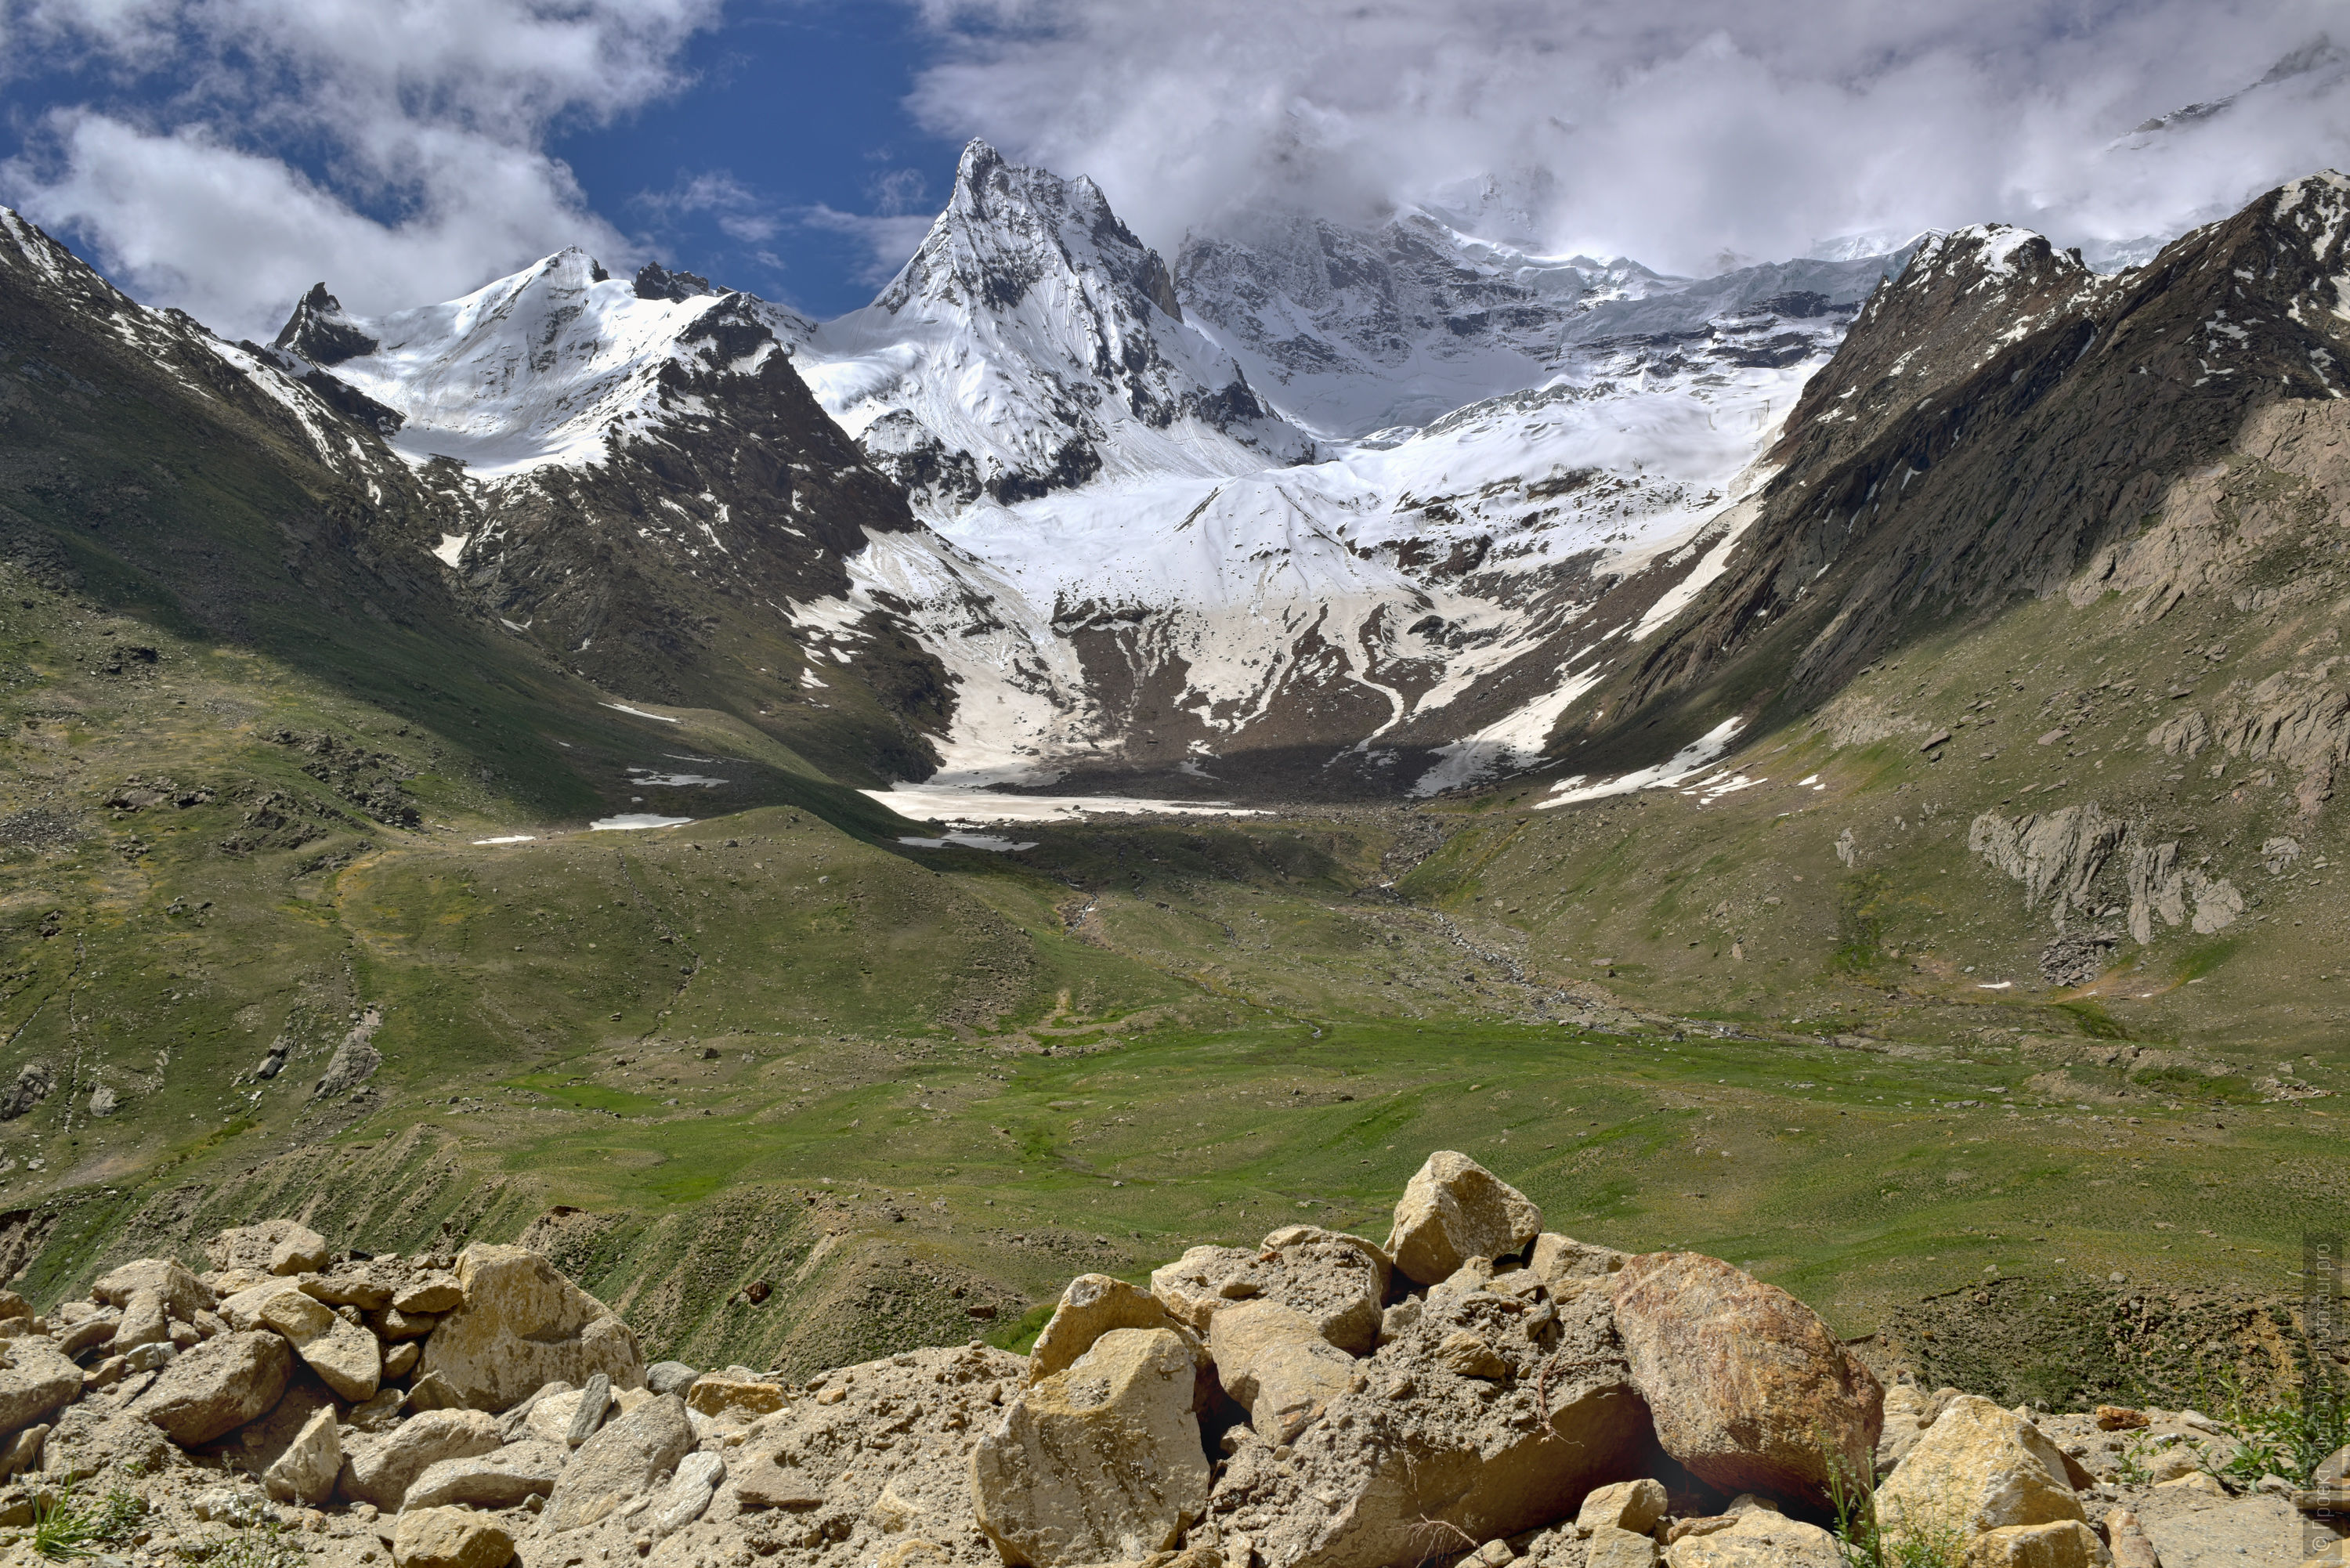 The glaciers of Zanskar. Budget photo tour Legends of Tibet: Zanskar, September 15 - September 26, 2021.